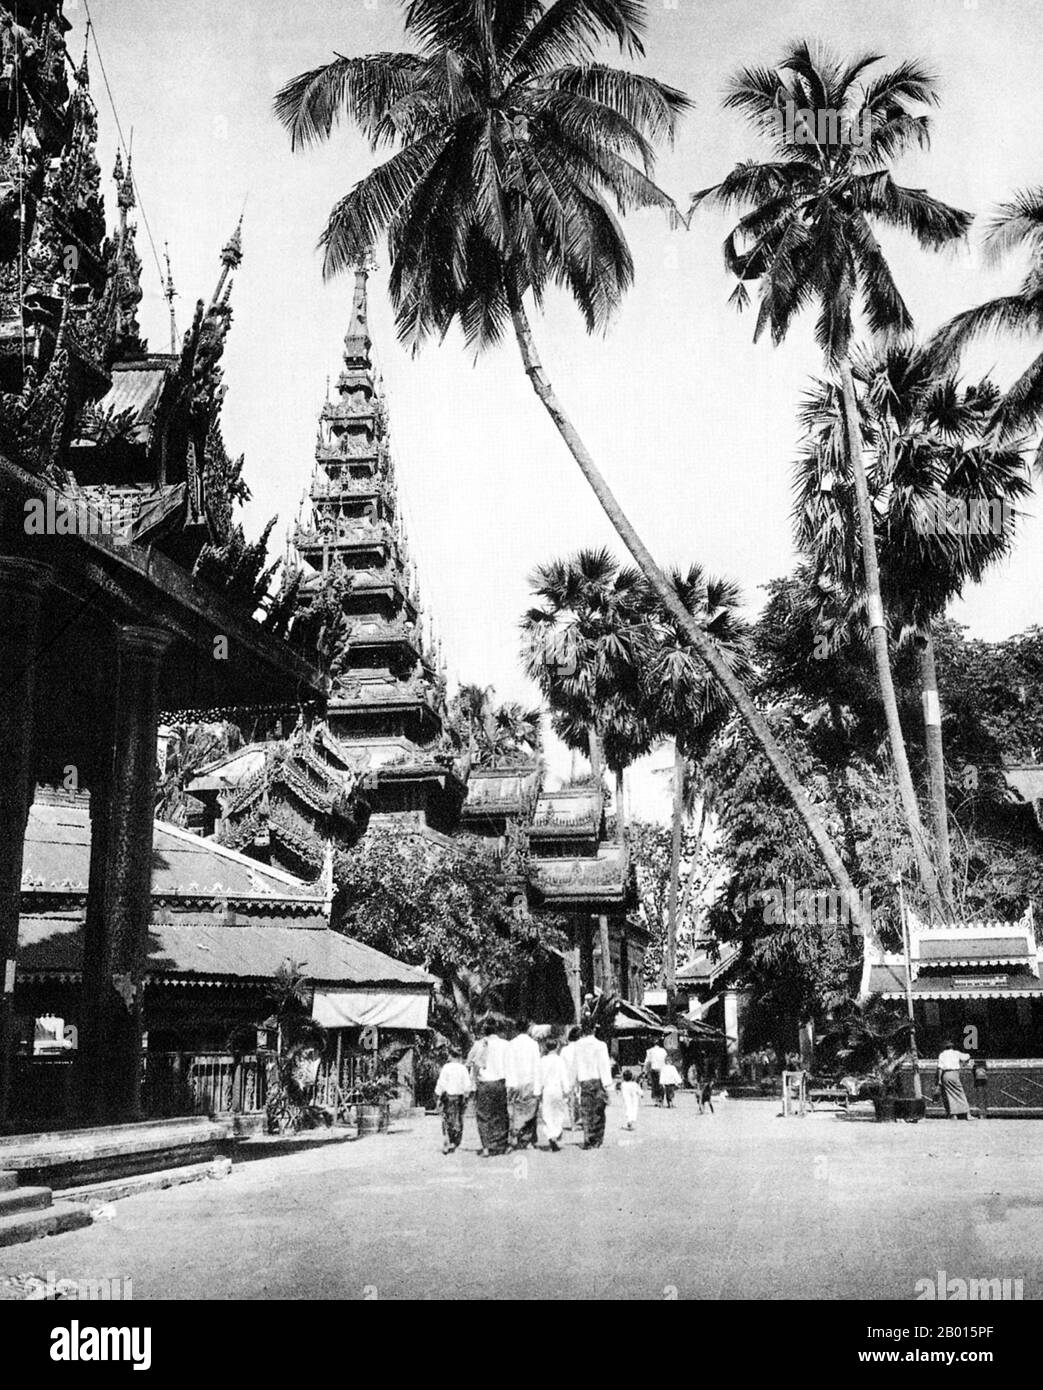 Burma/Myanmar: Chedi und Pavillon im Inneren der Shwedagon Pagode, Rangun, c. 1920er Jahre. Die 322 m lange, vergoldete Stupa der Shwedagon Pagode dominiert die Skyline von Rangun von ihrem Aussichtspunkt auf dem Singuttara Hill im Zentrum der Stadt und ist Burmas bekanntestes Wahrzeichen und Buddhistisches Denkmal. Obwohl die Legende besagt, dass die Pagode zur Zeit von Siddharta Gautama, dem Buddha, vor etwa 2,500 Jahren gebaut wurde, schreiben Archäologen den Bau des Tempels den Mon-Leuten irgendwann zwischen dem 6. Und 10. Jahrhundert u.Z. zu. Sie wird oft als die „Goldene Pagode“ bezeichnet. Stockfoto